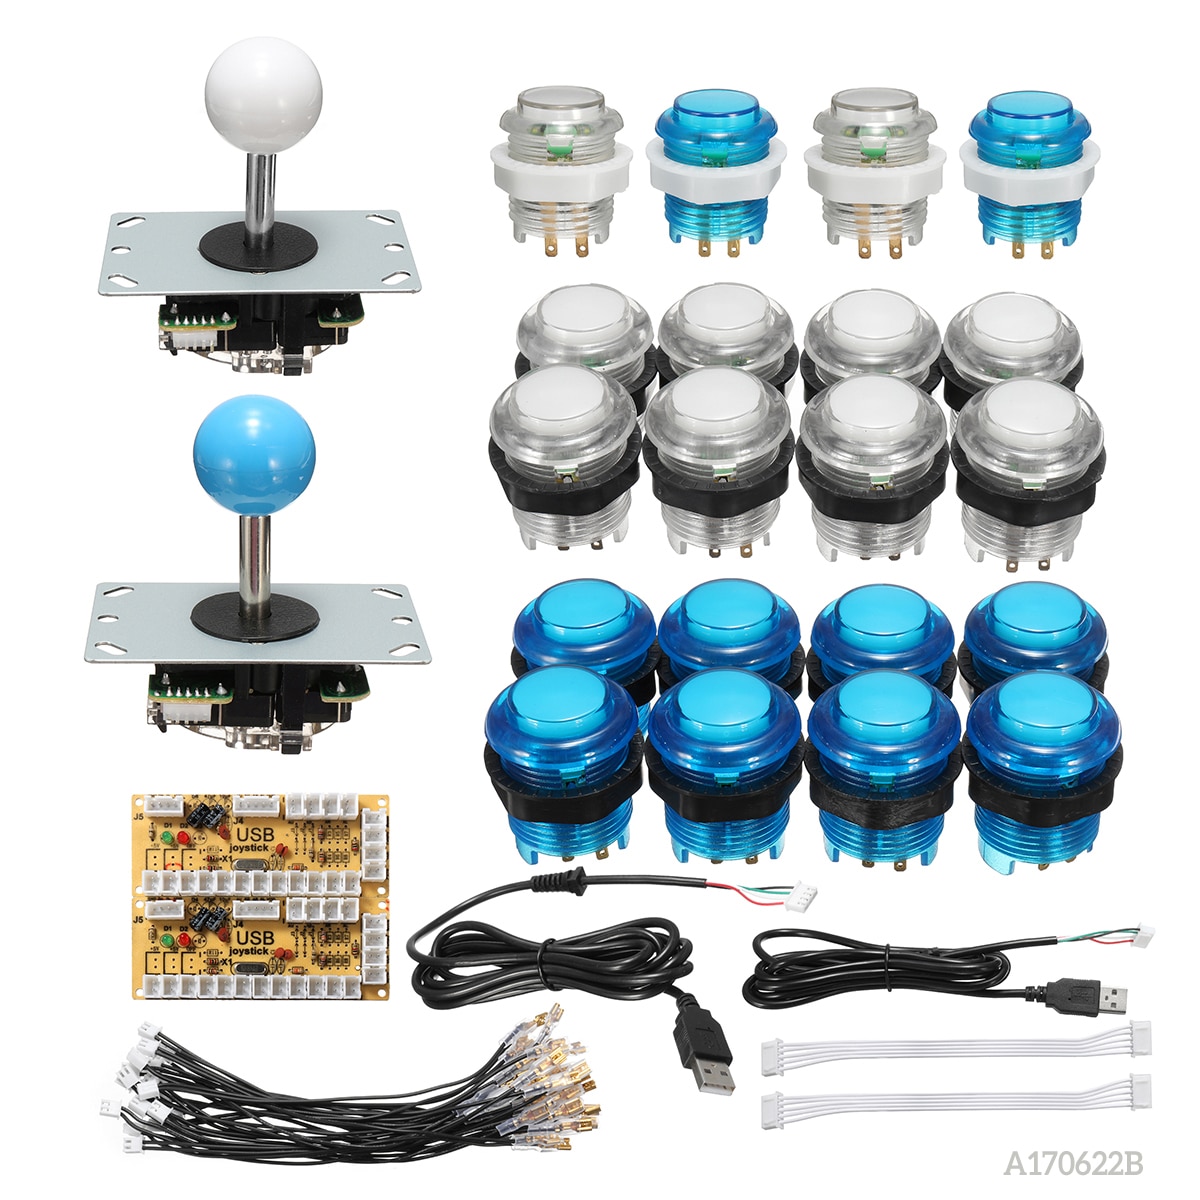 Cero retraso Joystick Arcade DIY Kit de empuje con LED Botón de Joystick USB + codificador + arnés de cable controlador USB para Arcade Mame juego de Arcade